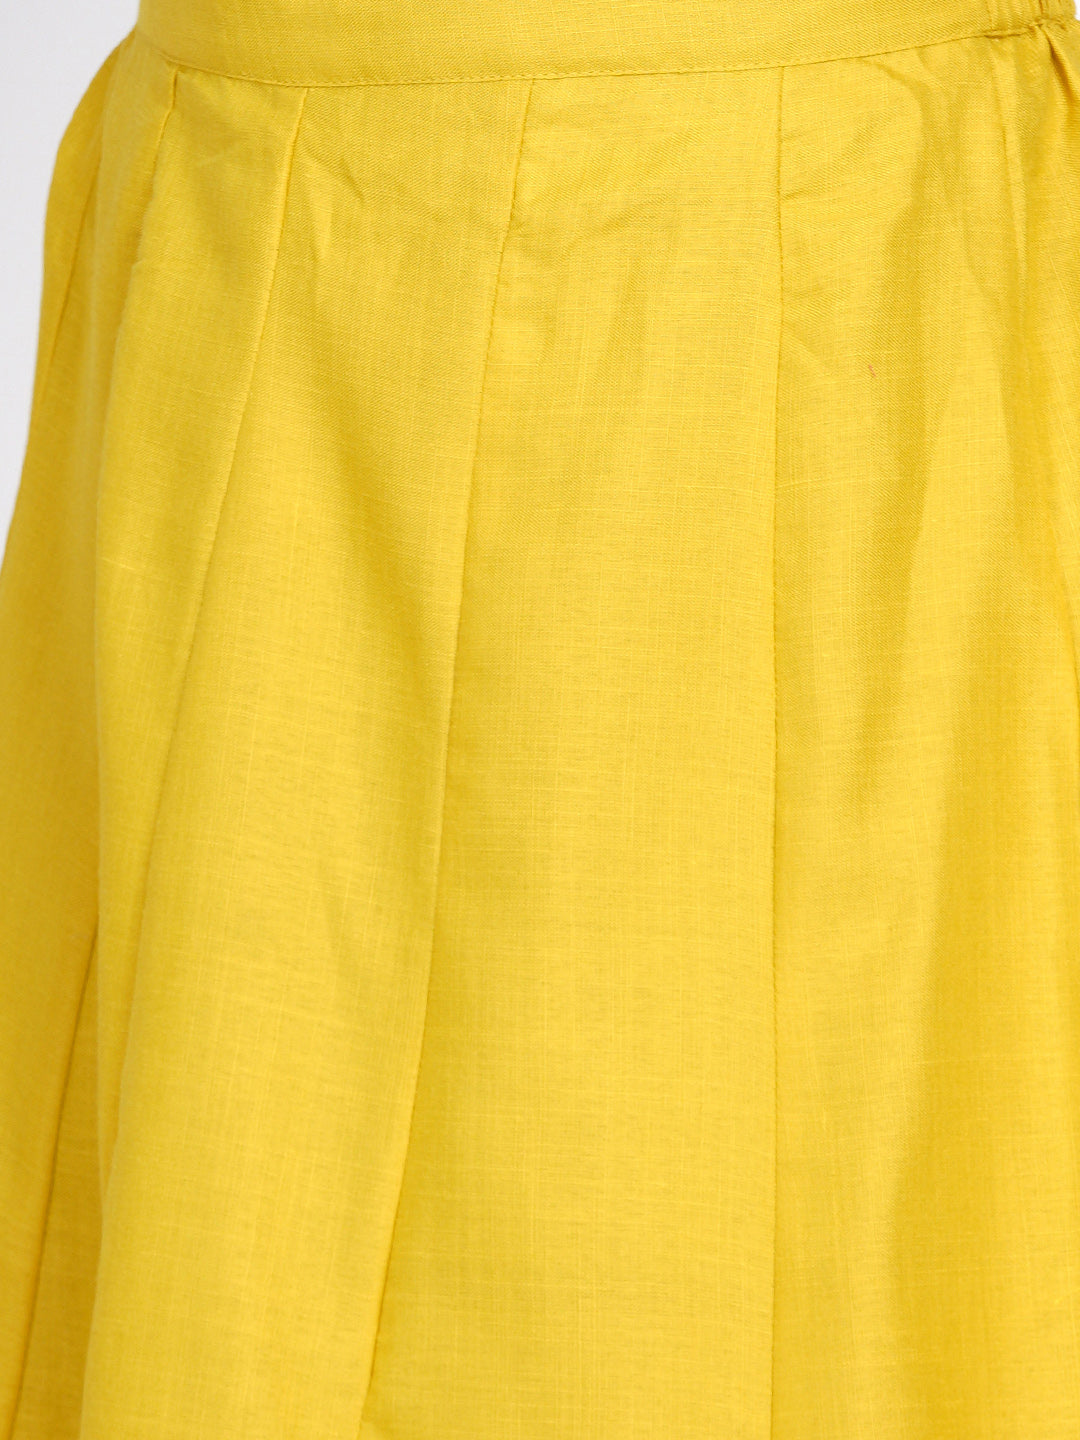 Women's Mustard Yellow Solid Gotta Detailing Kurta & Mustard Gotta Lace Skirt - Bhama Couture